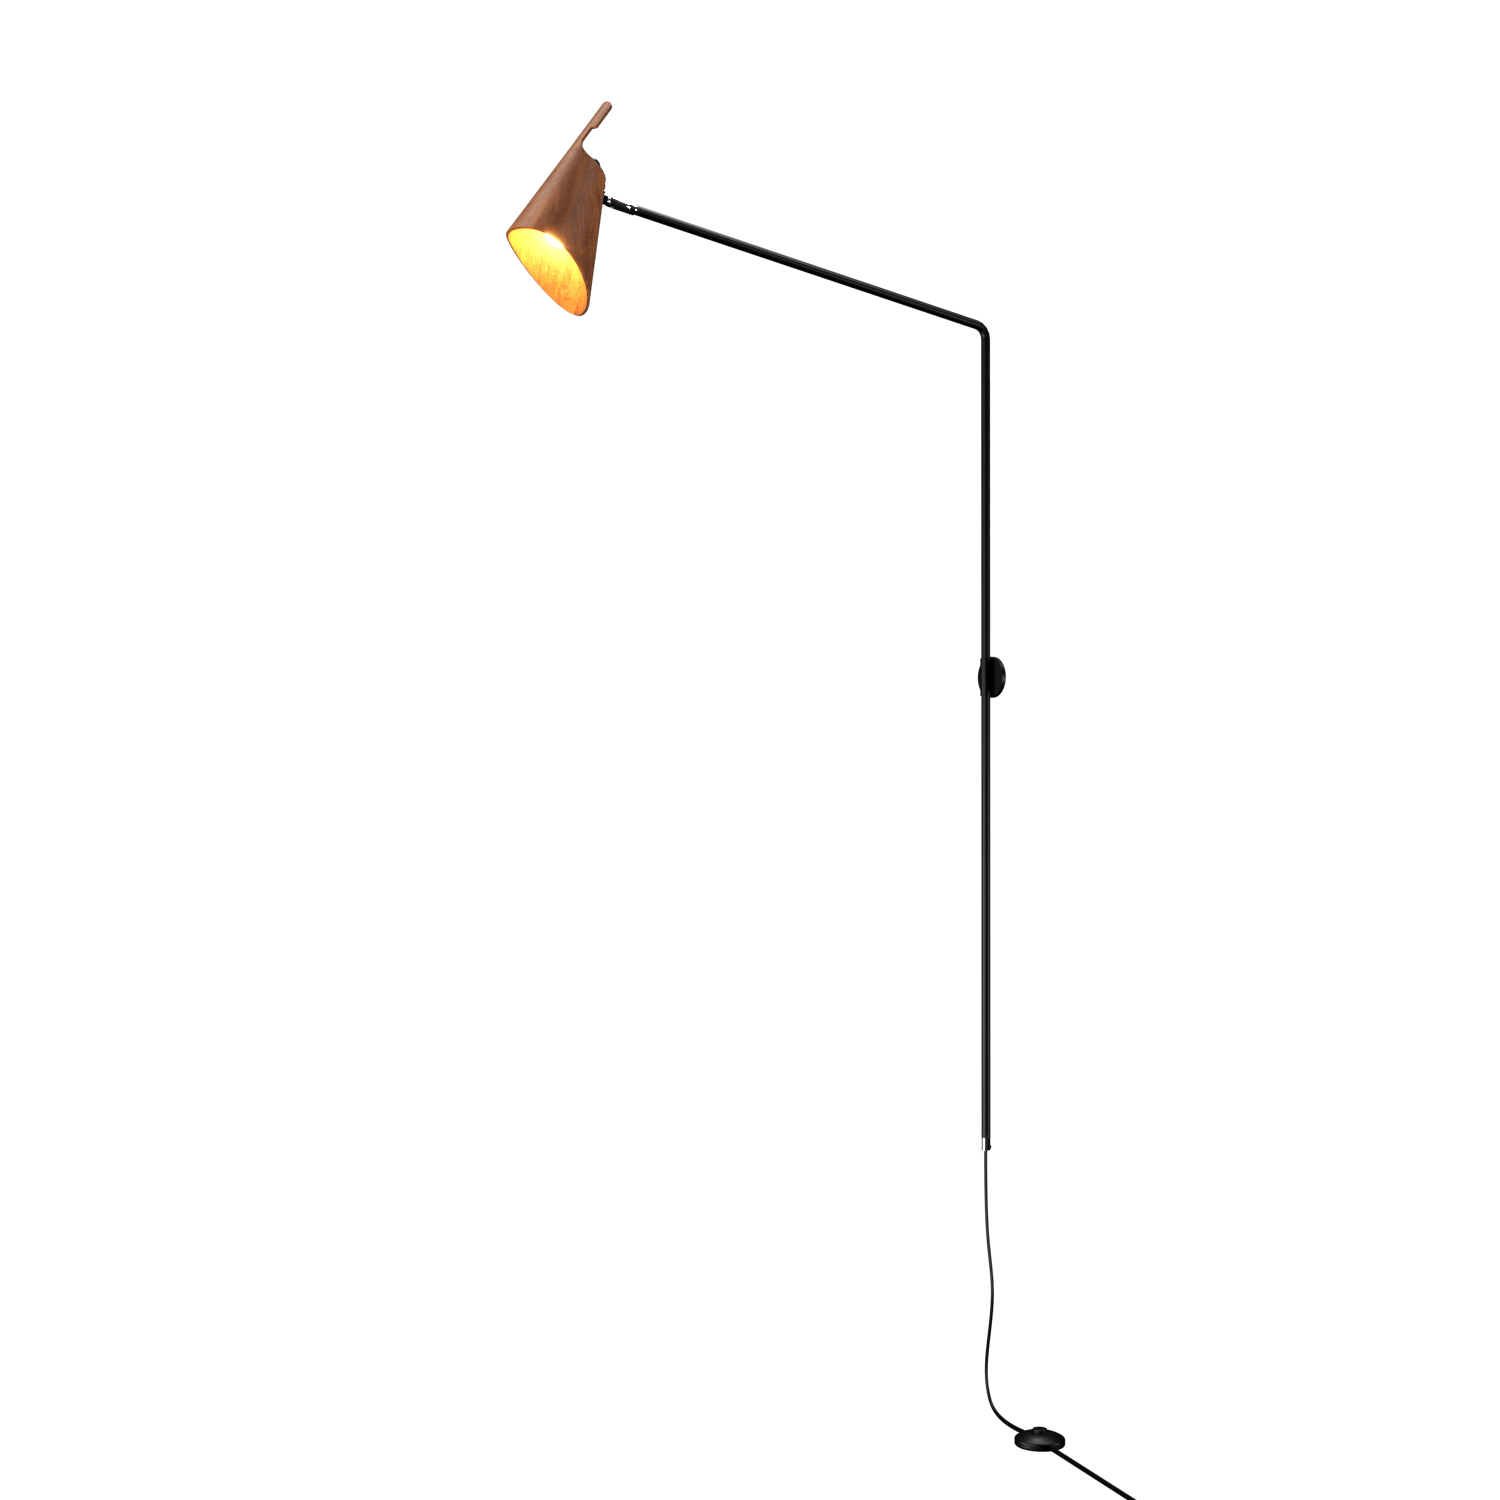 Wall Lamp Accord Balance 4193 - Balance Line Accord Lighting | 06. Imbuia